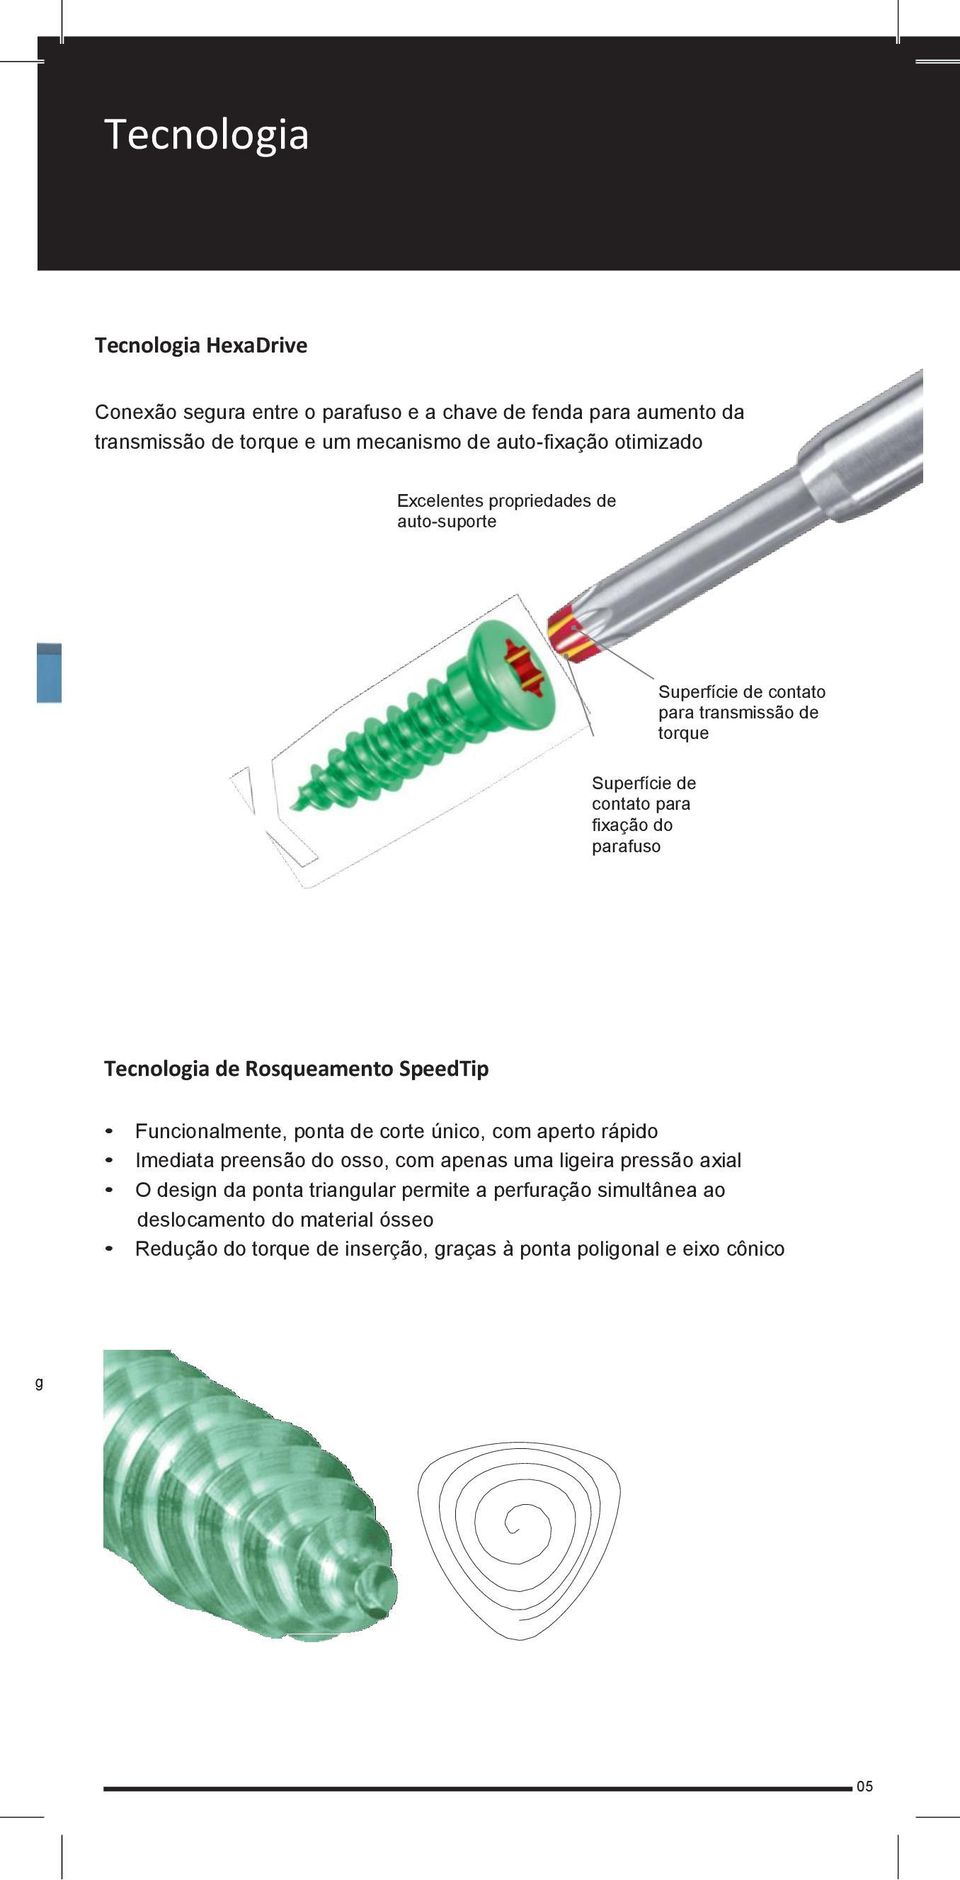 Tecnologia de Rosqueamento SpeedTip Funcionalmente, ponta de corte único, com aperto rápido Imediata preensão do osso, com apenas uma ligeira pressão axial